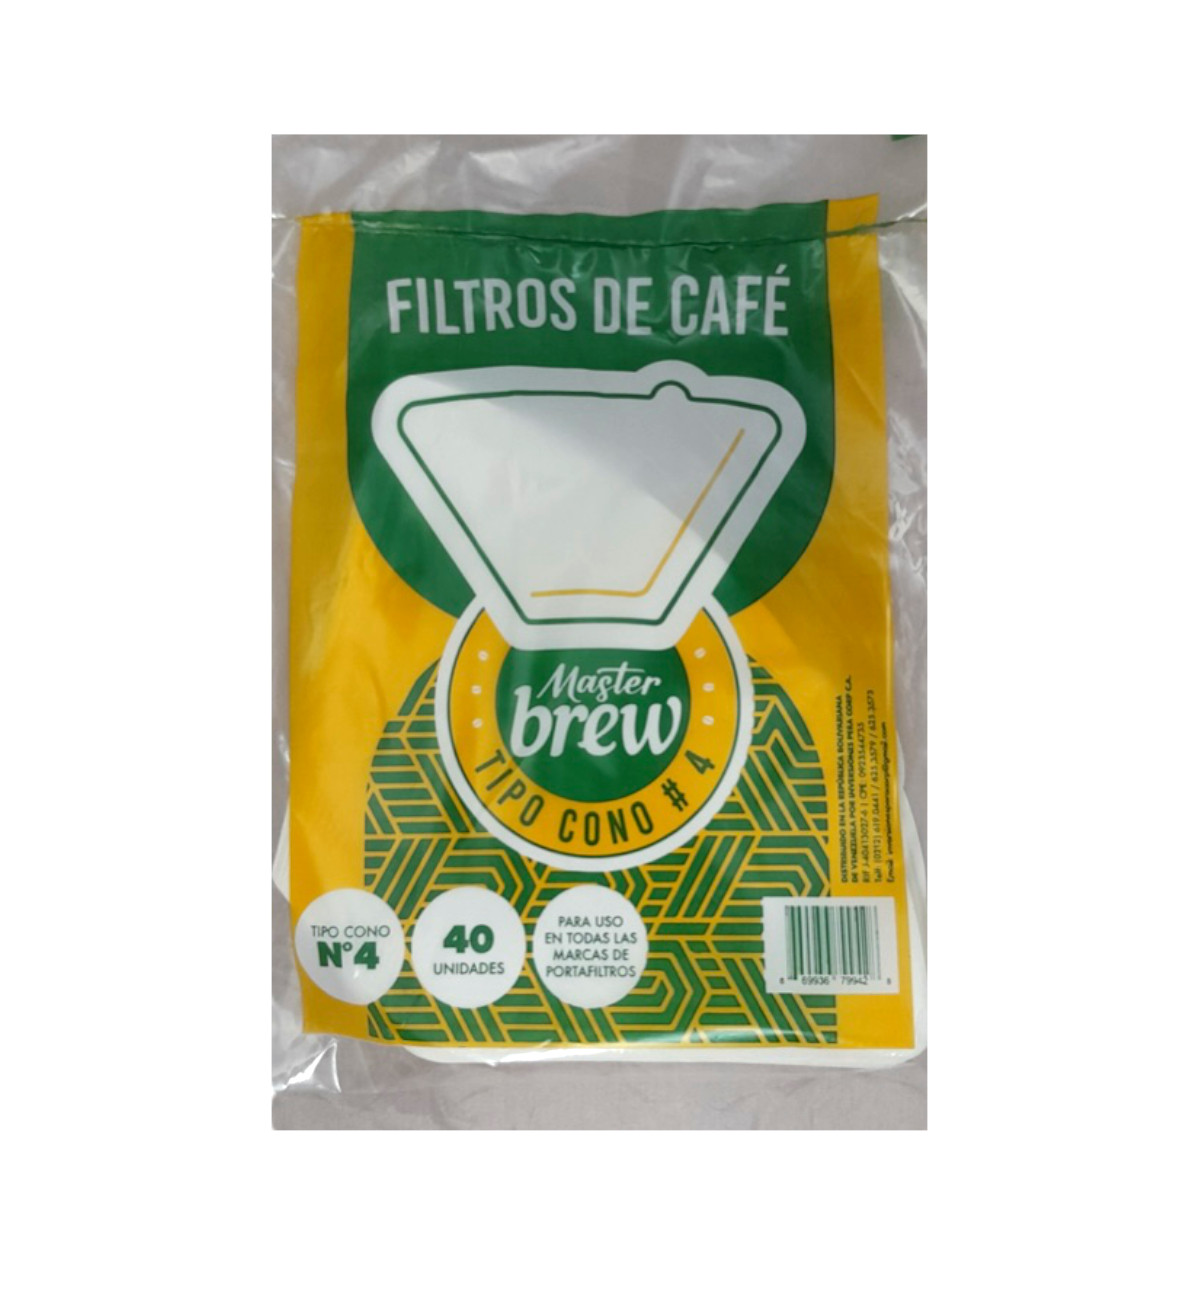 Ver Información de Filtro para Cafetera tipo Cono # 4 Master Brew x 40 en Verines.com